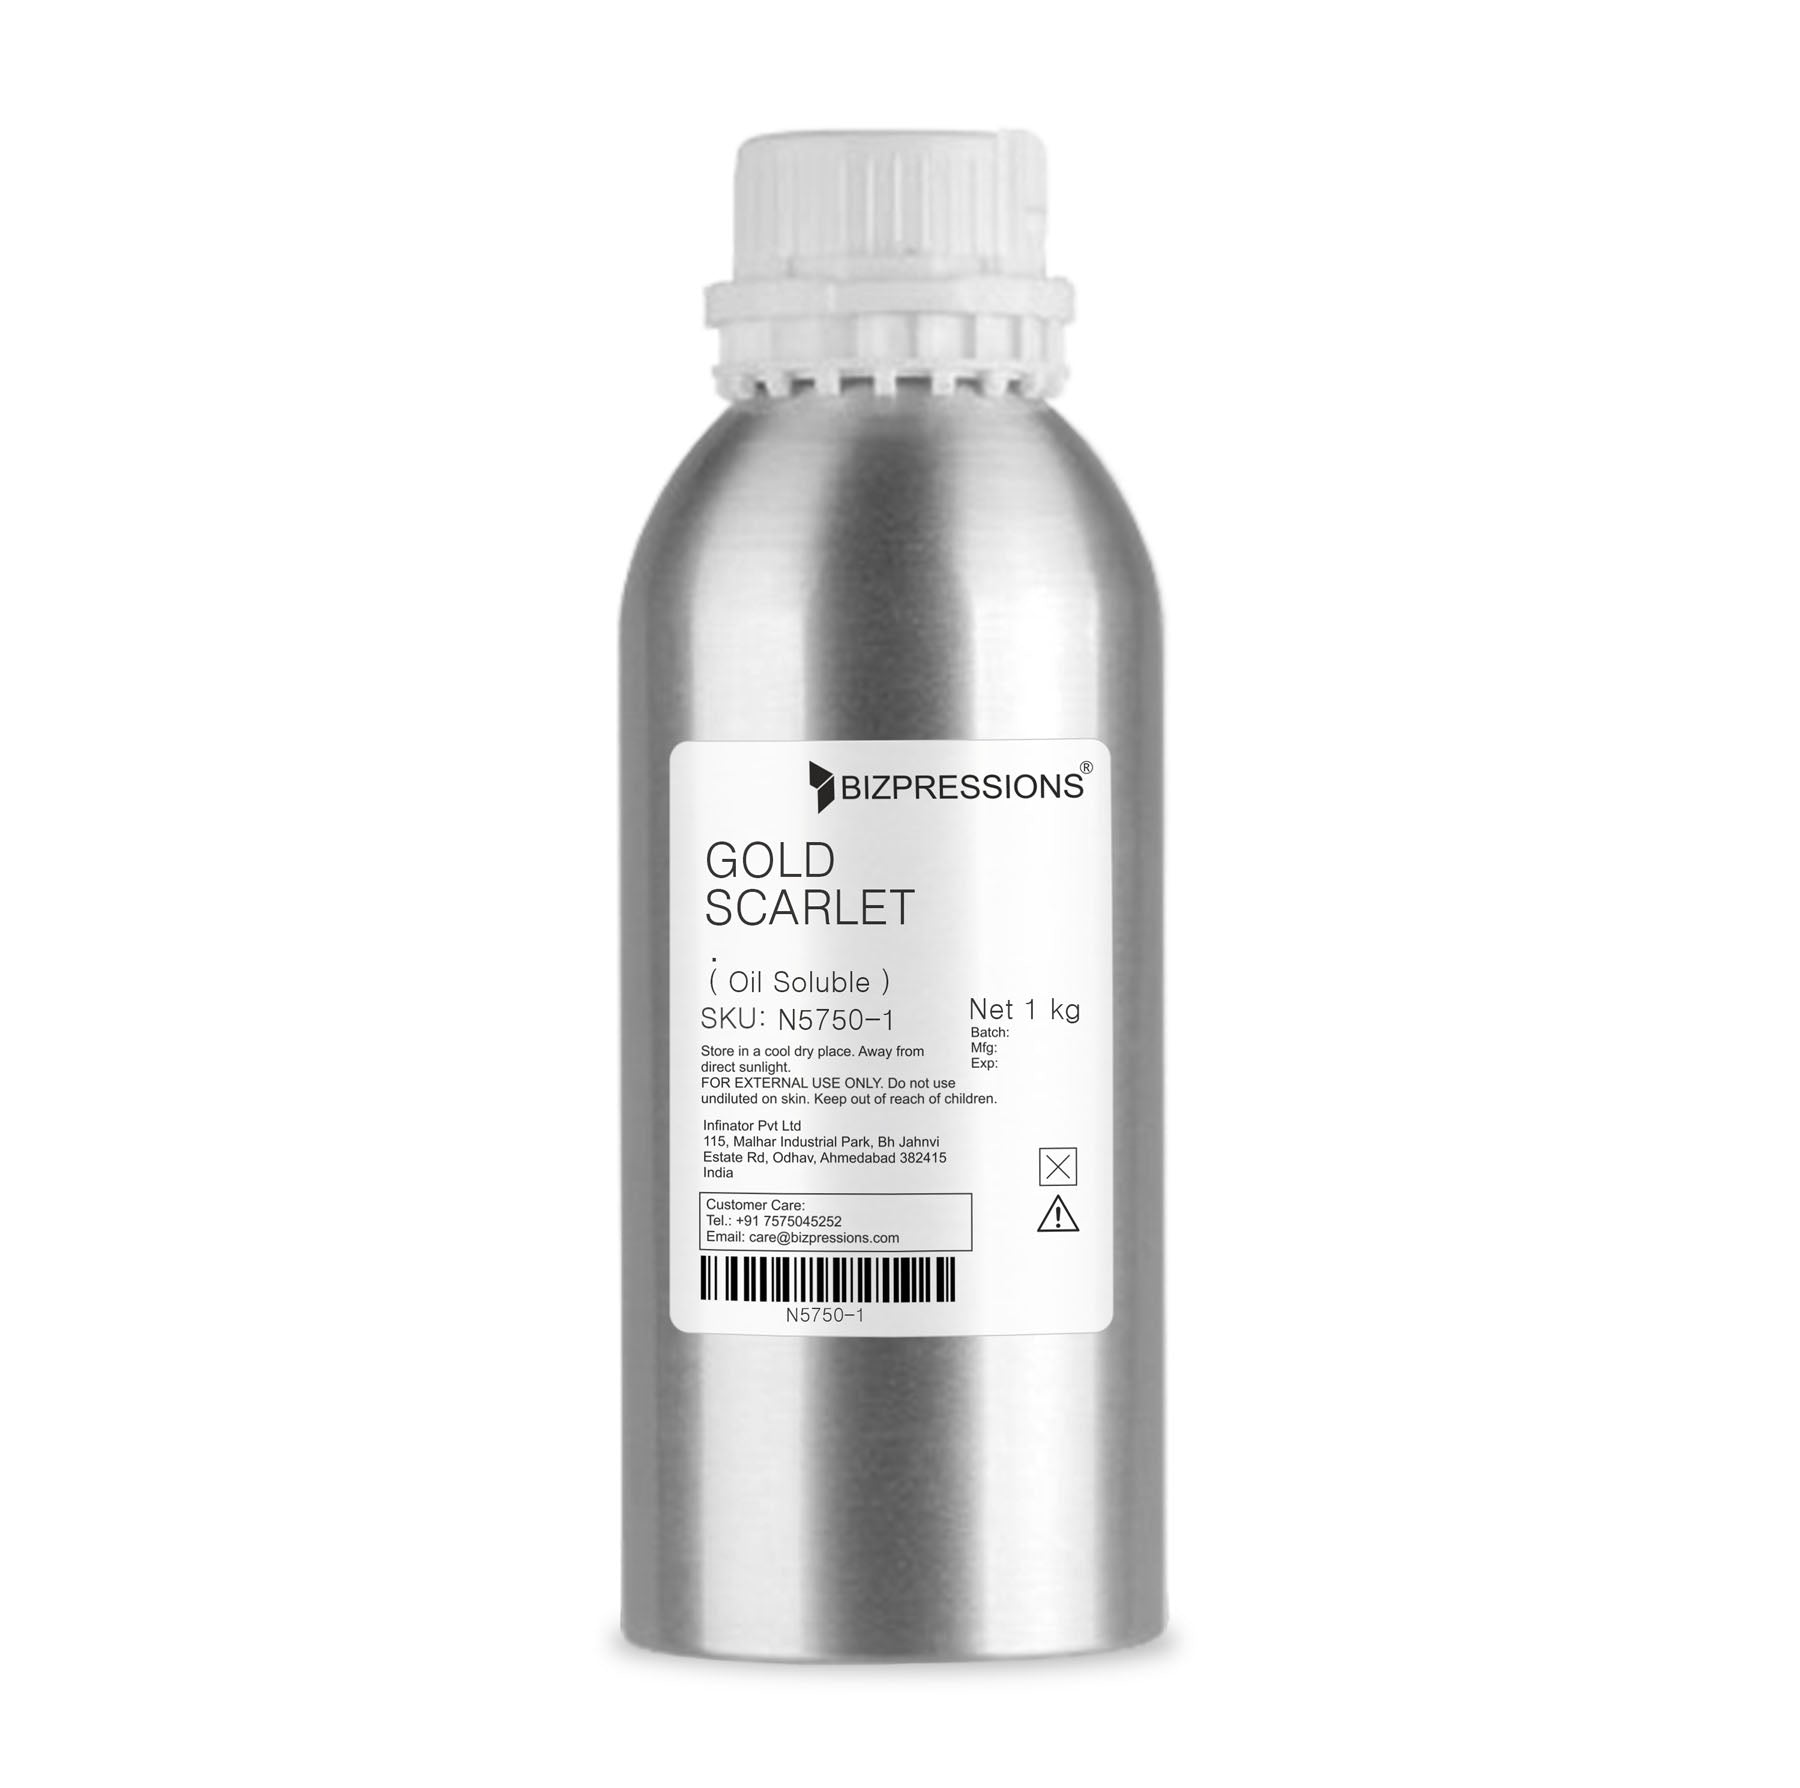 GOLD SCARLET - Fragrance ( Oil Soluble ) - 1 kg